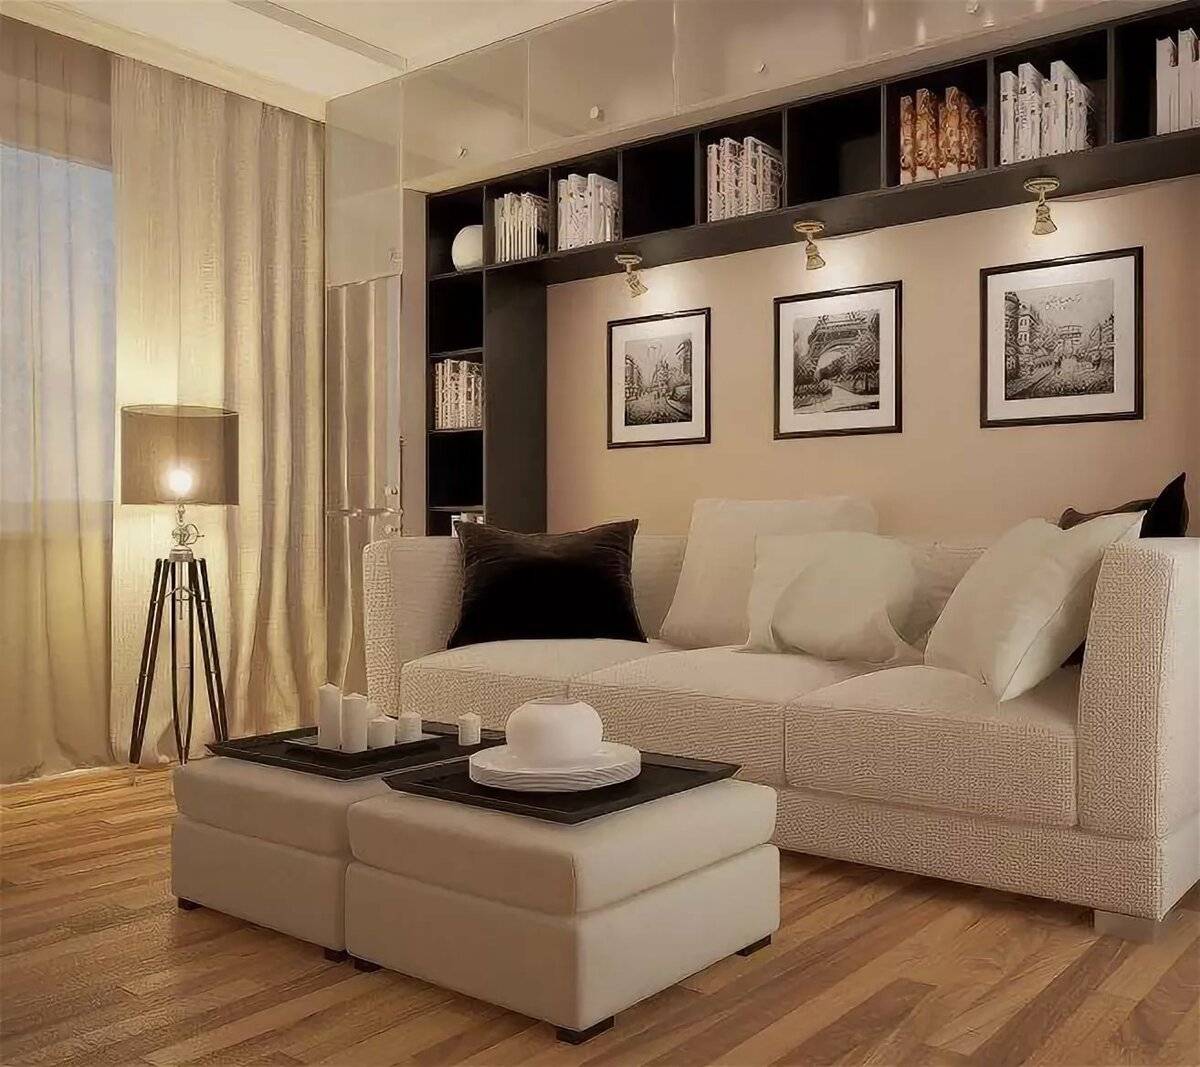 Как выбрать хороший угловой диван для гостиной. фото, критерии